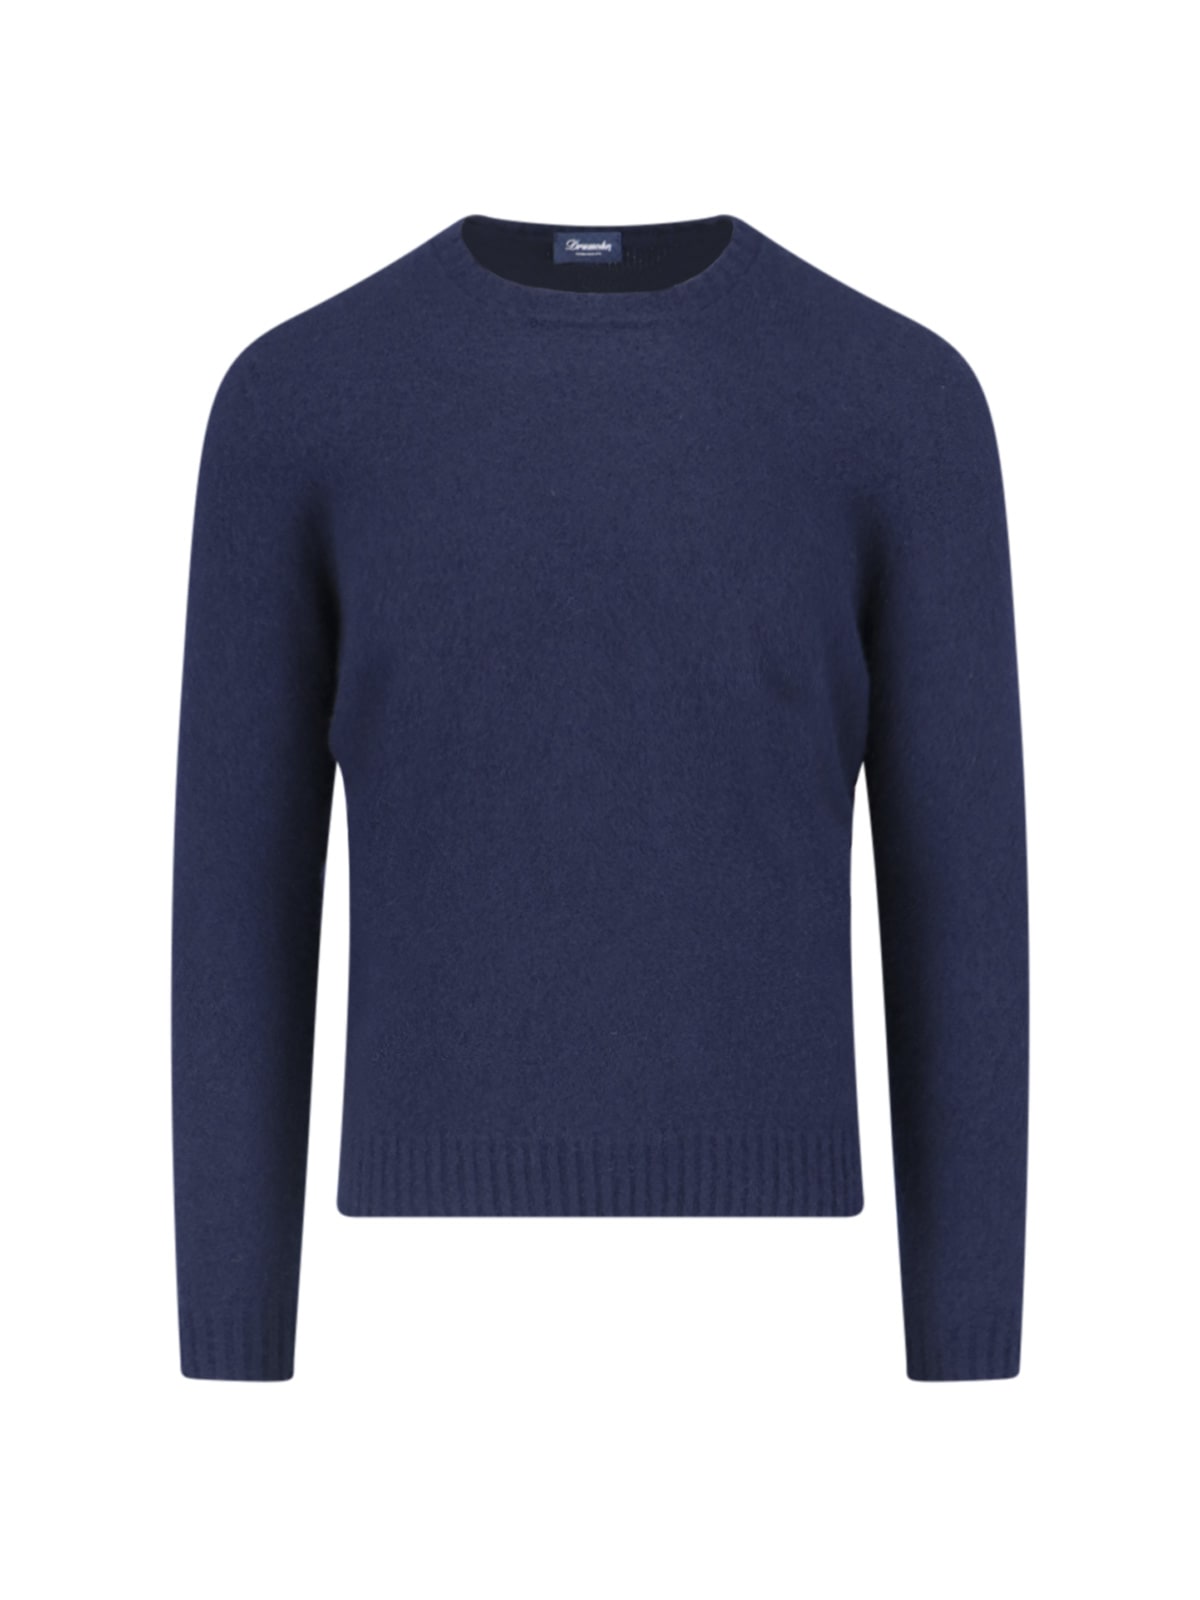 Shop Drumohr - Classic Sweater